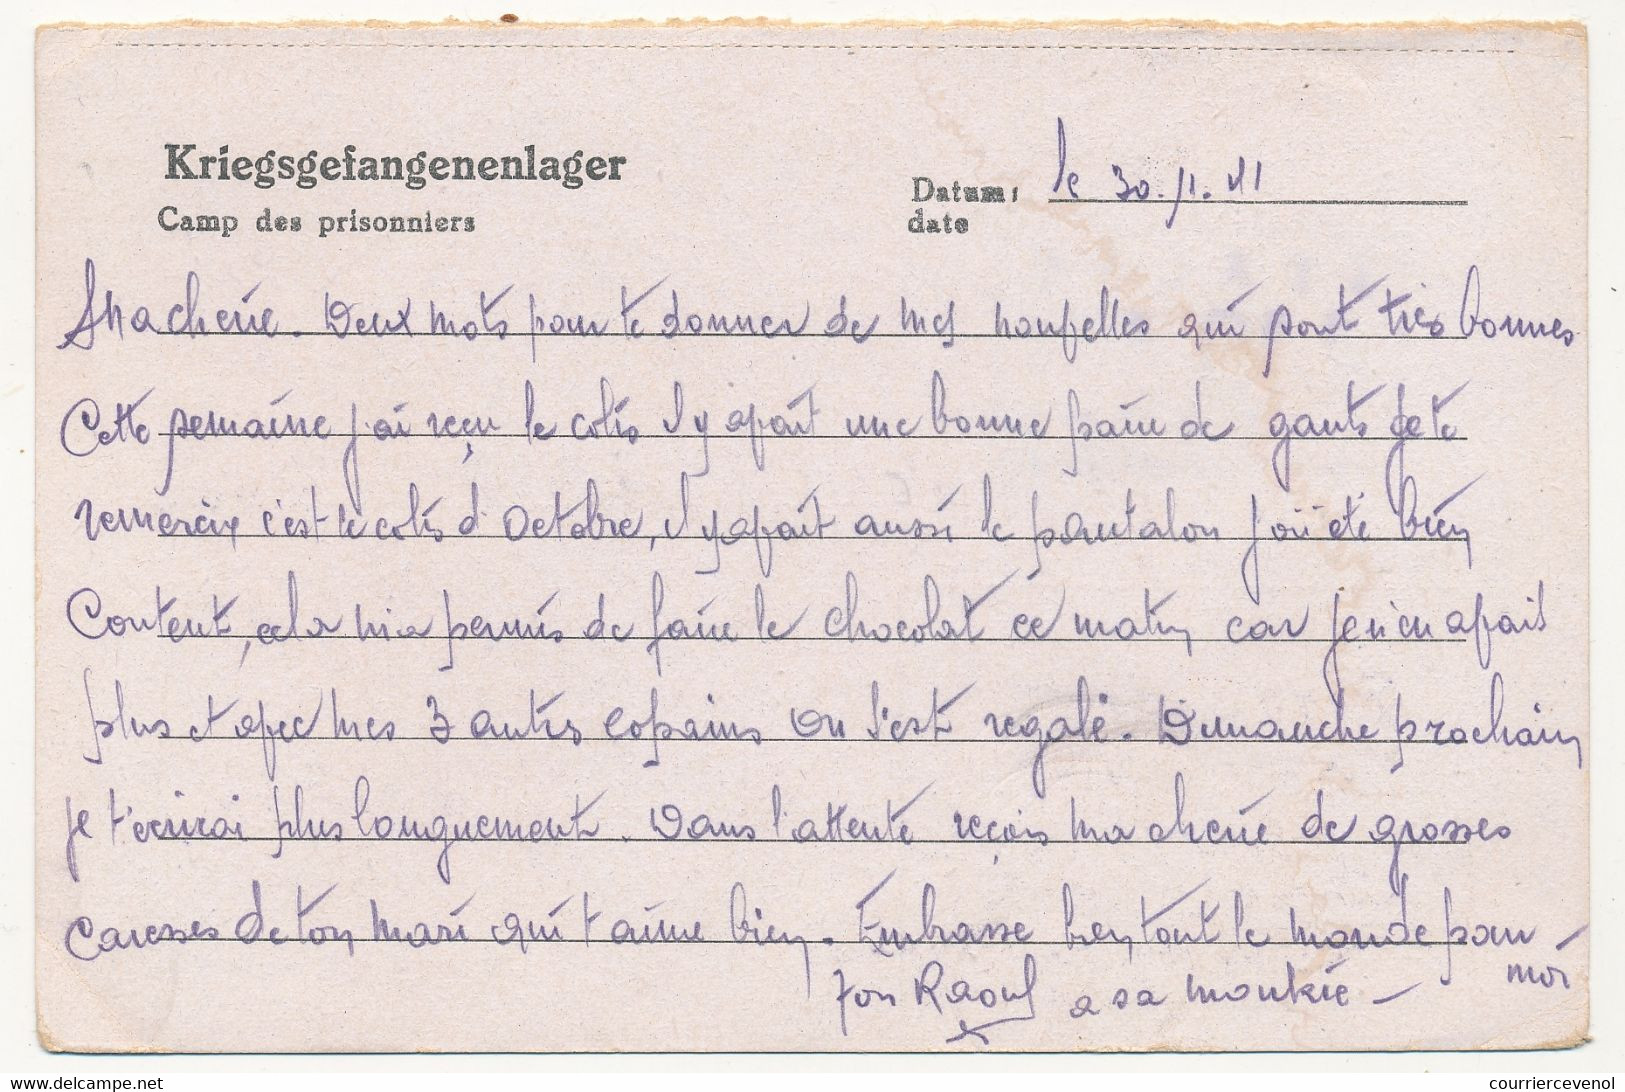 KRIEGSGEFANGENENPOST - Postkarte Depuis Le Stalag XVII A - Censeur 230 - 1941 - Guerre De 1939-45